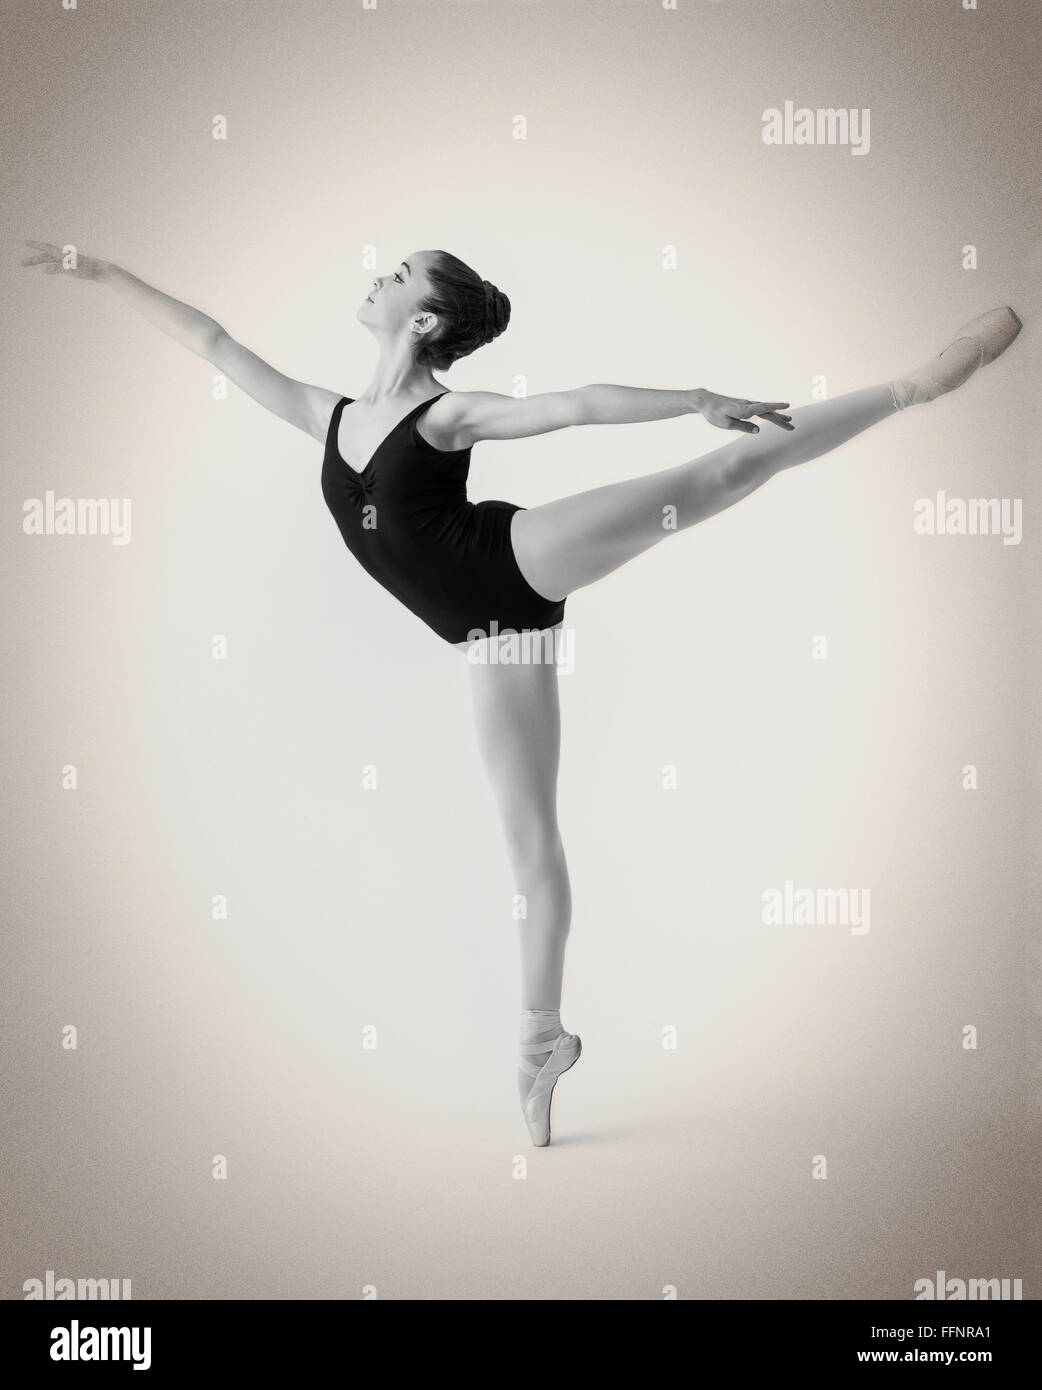 Noir et blanc photographie de femme danseuse ballerine adolescents effectuant une arabesque Banque D'Images